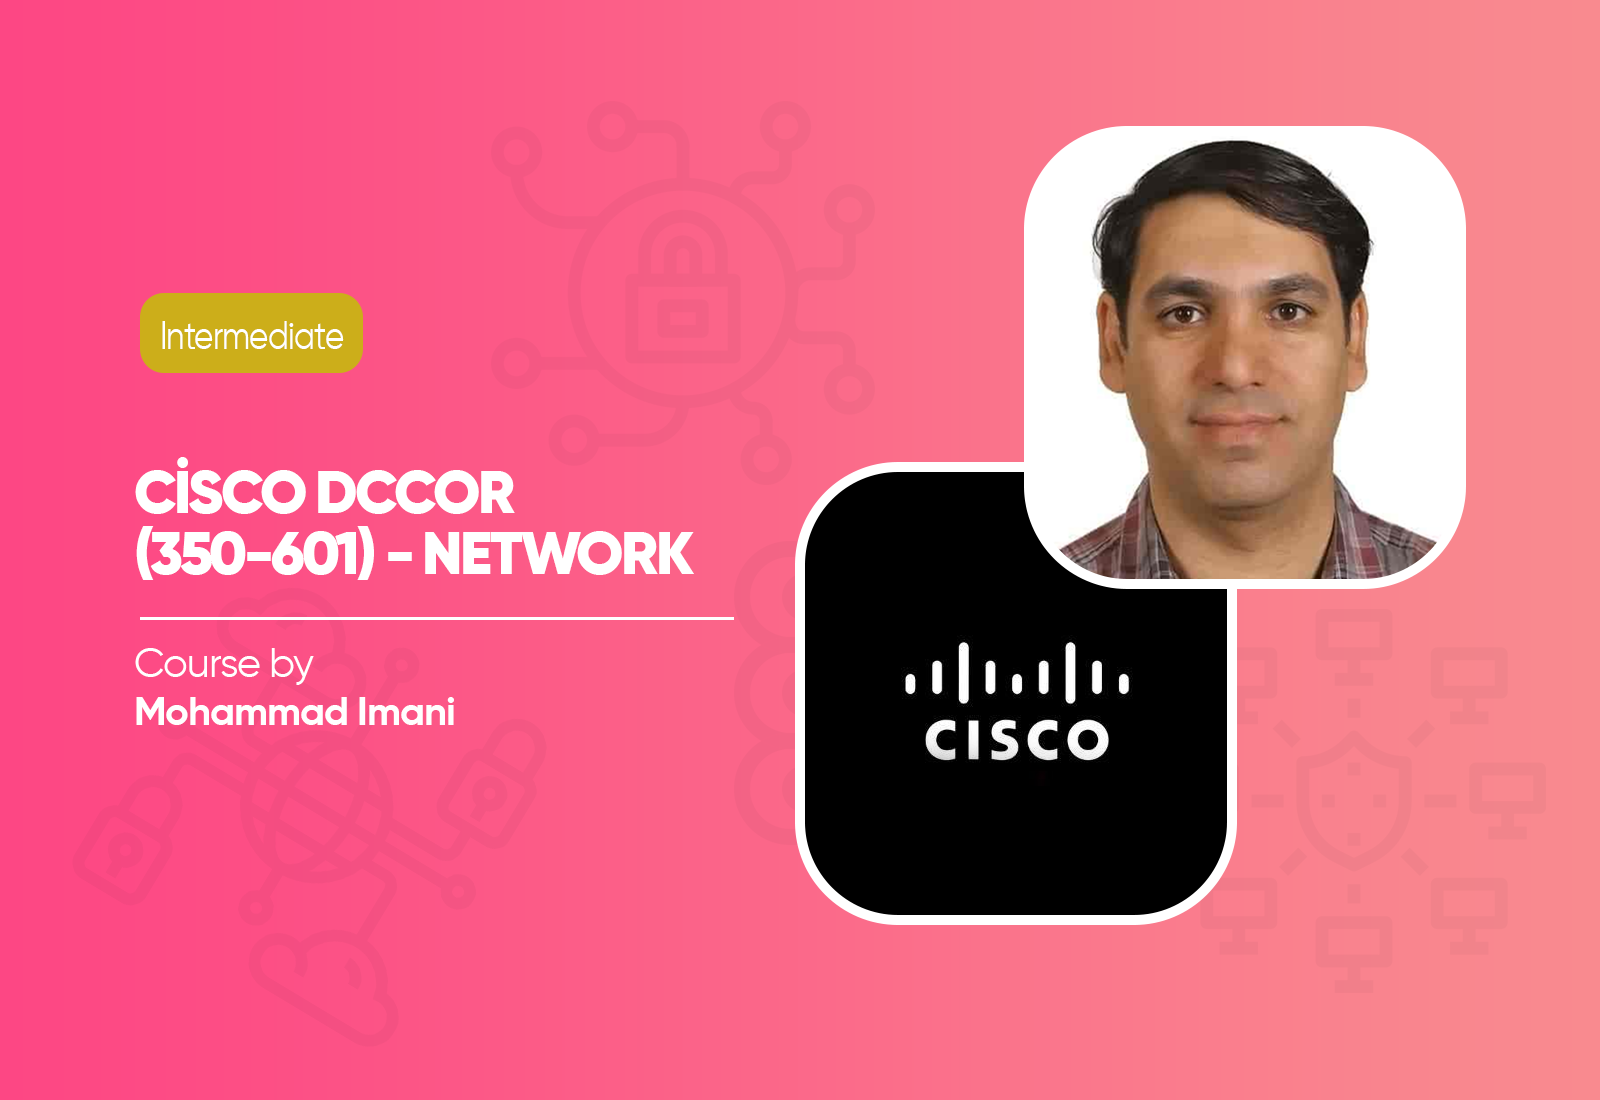 Cisco DCCOR (350-601) - Network Course 